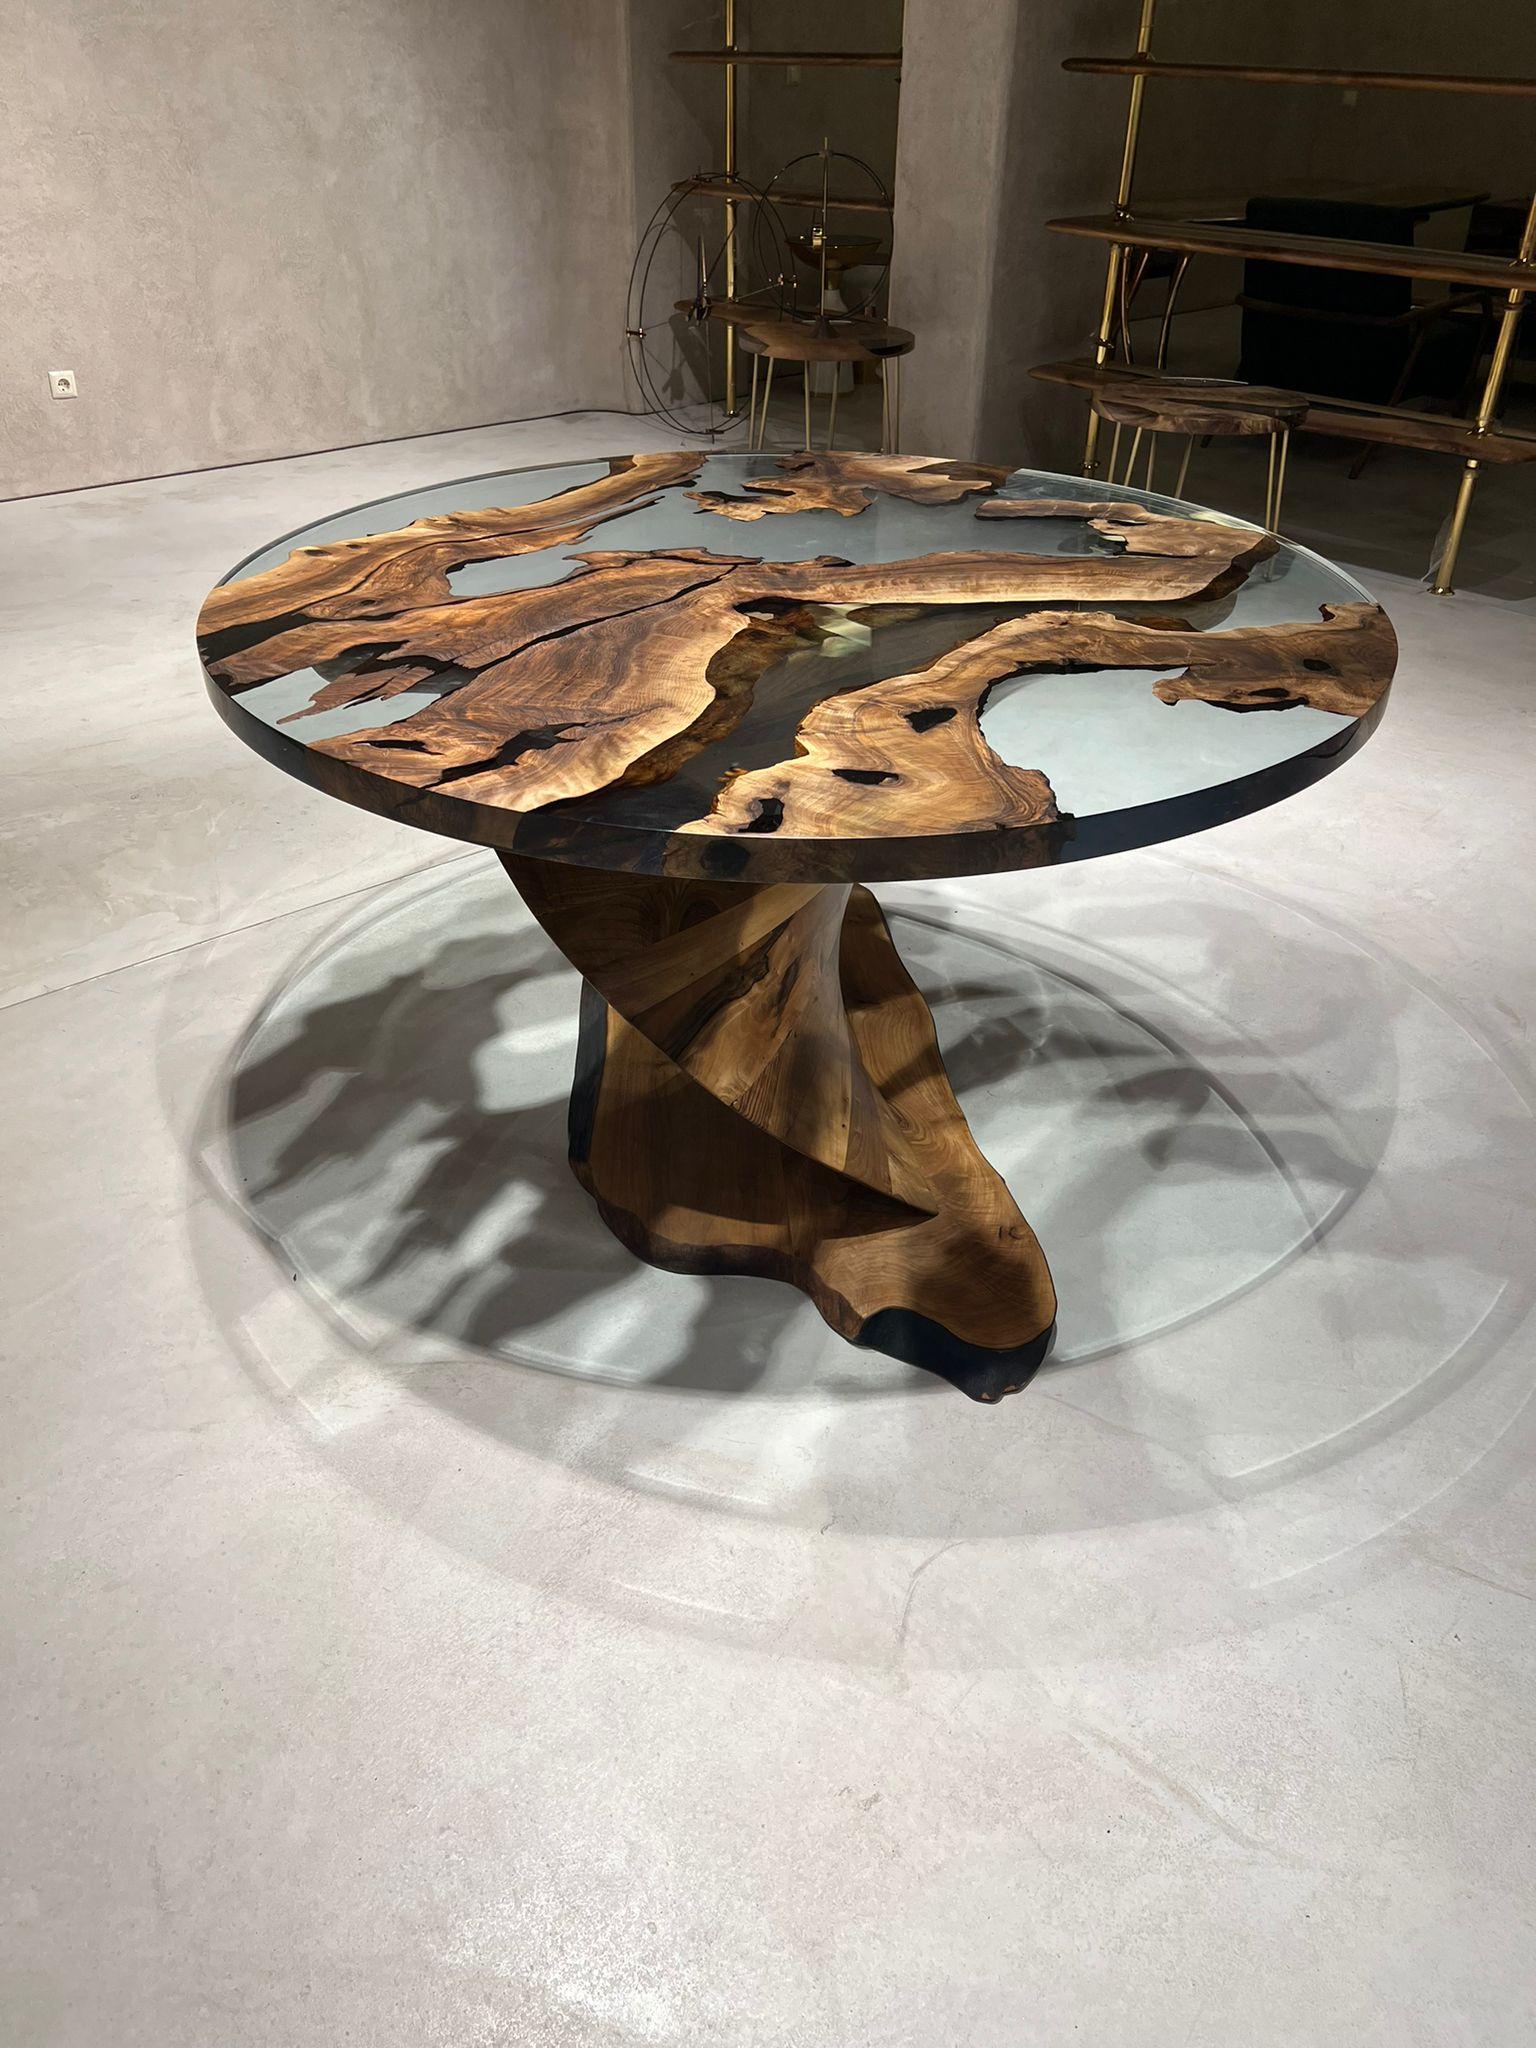 Wir präsentieren den TYWIN RUNDEN TISCH - ein exquisites und sorgfältig gefertigtes Möbelstück, das Ihrem Esszimmer einen Hauch von Raffinesse verleihen wird. Dieser herrliche Tisch ist nicht nur ein Platz zum Essen, sondern auch ein Kunstwerk, das